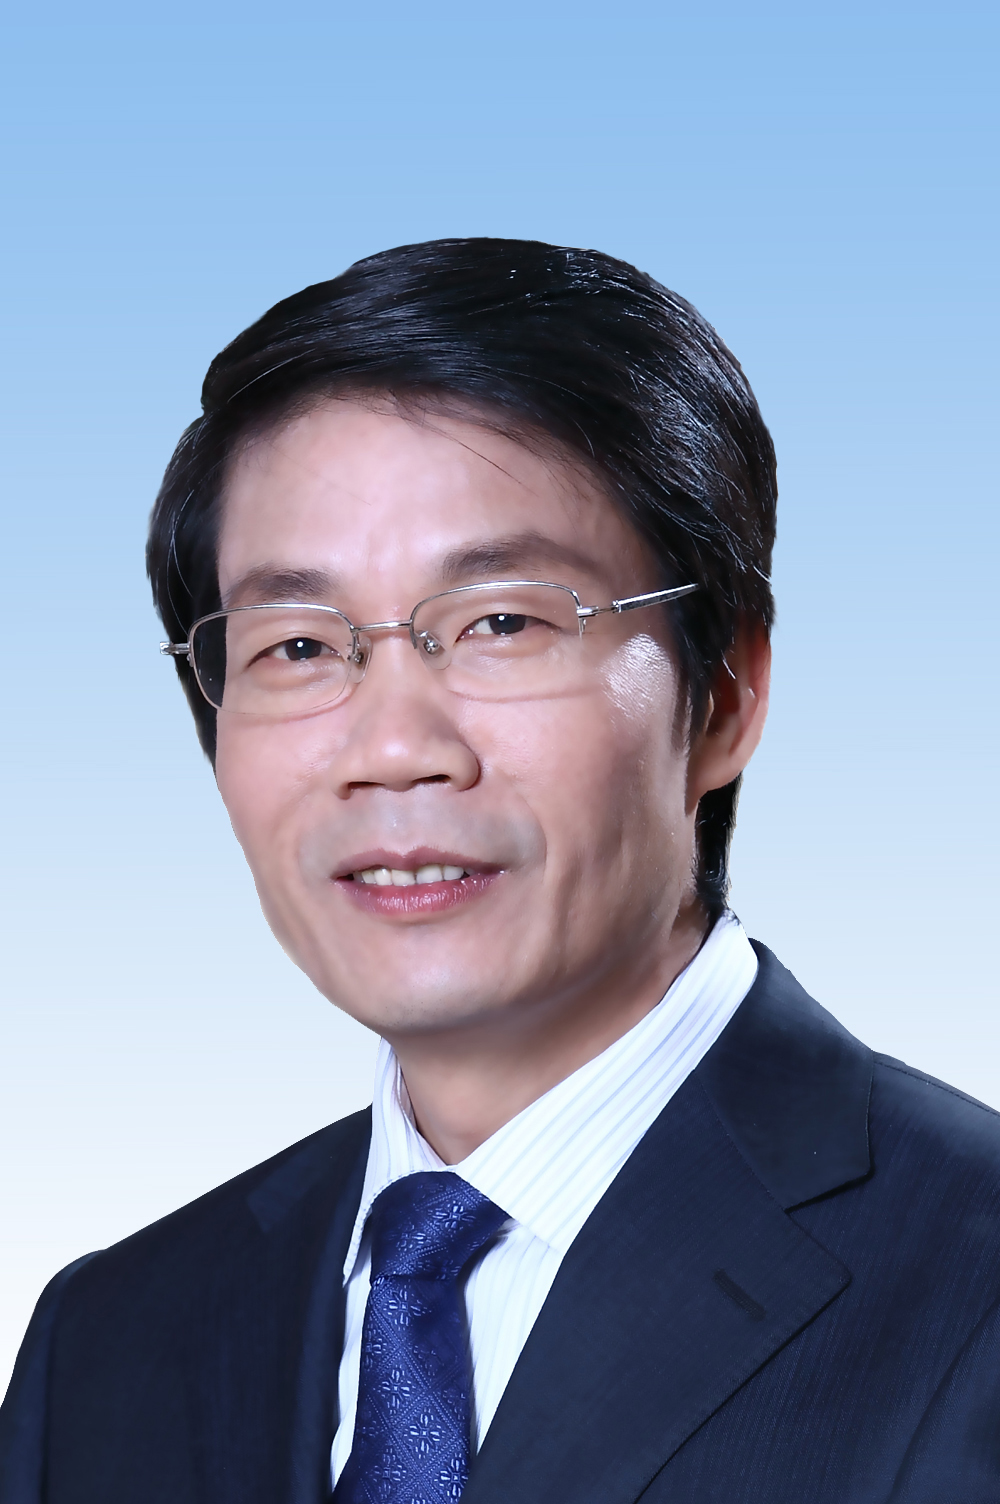 Chen Guoqiang